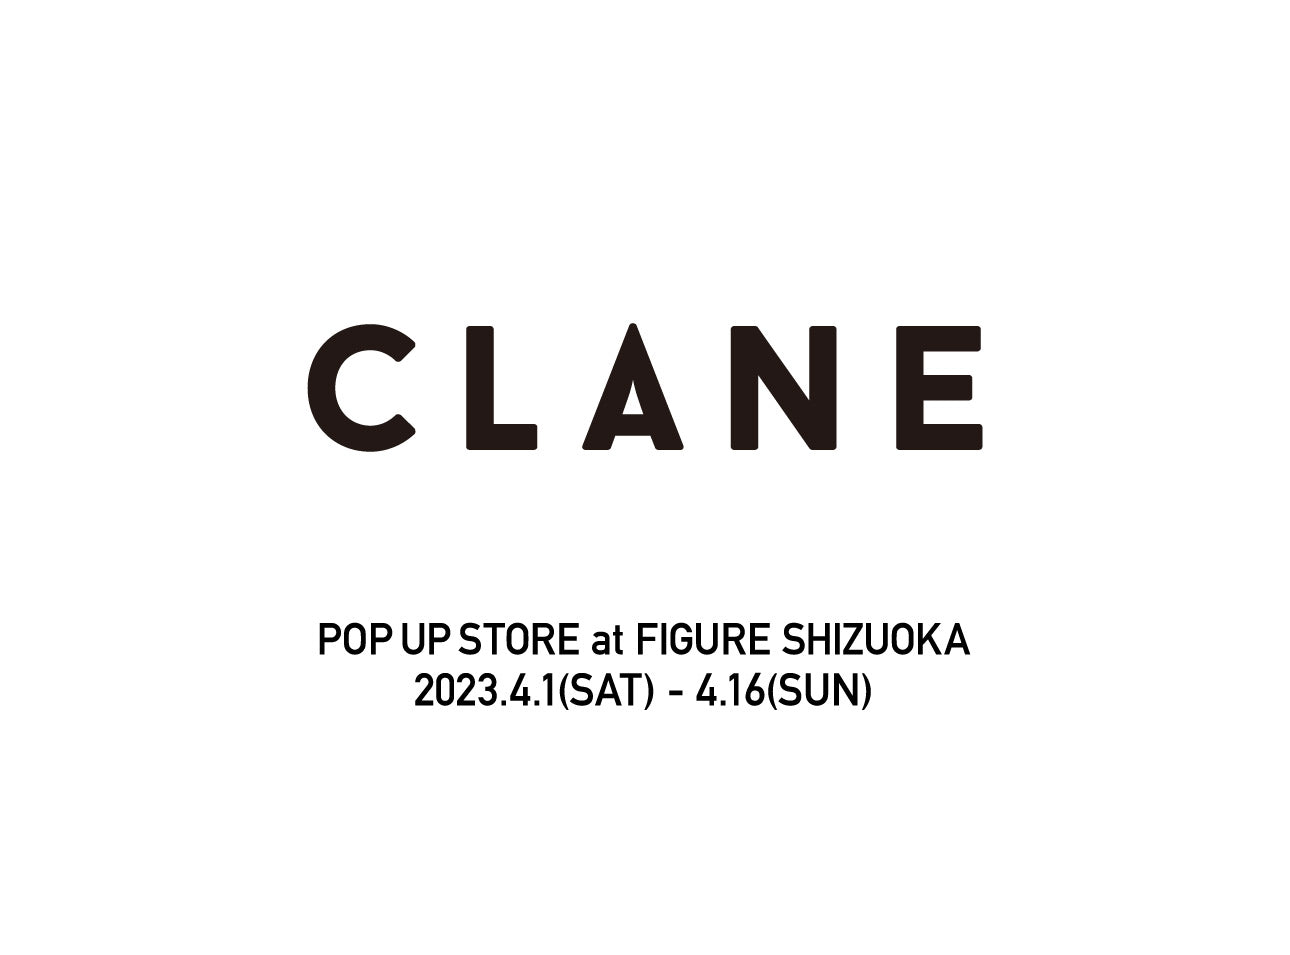 CLANE POP UP STORE at FIGURE SHIZUOKA